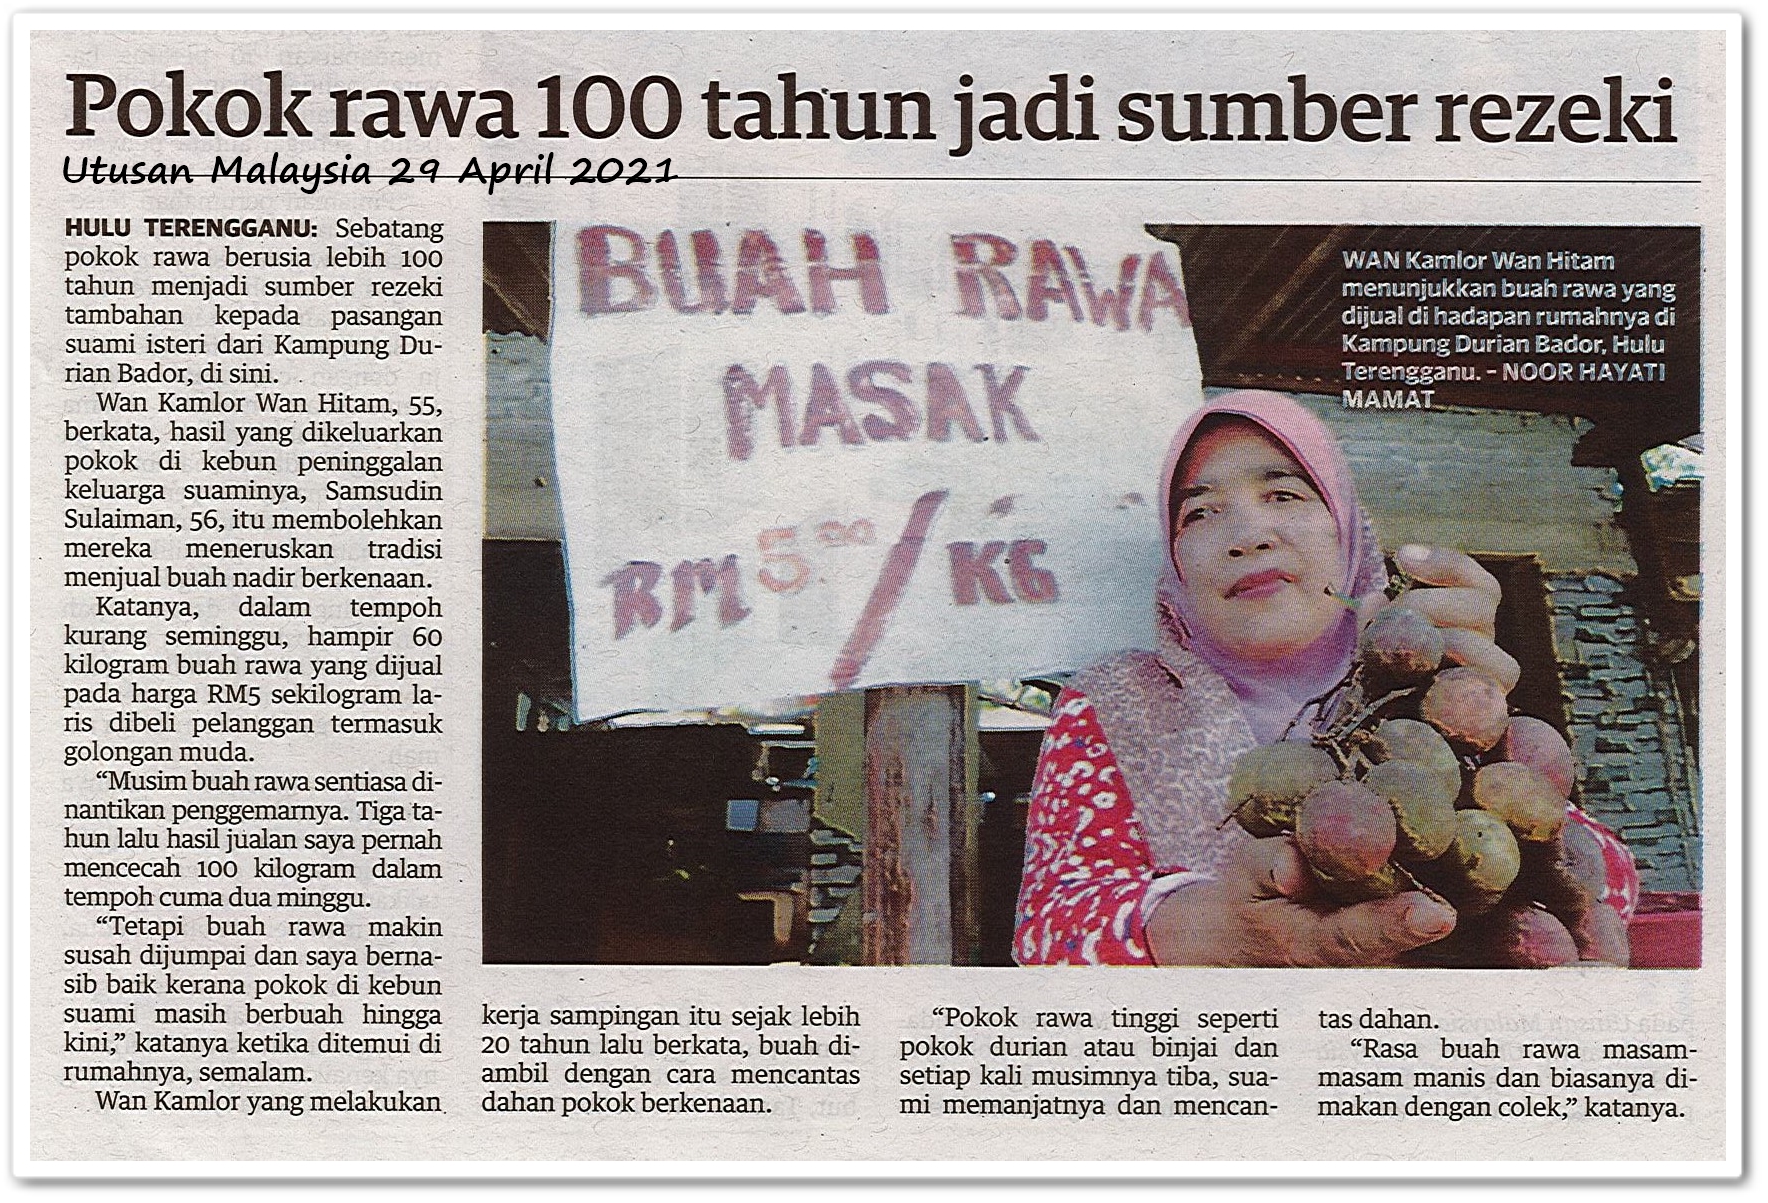 Pokok rawa 100 tahun jadi sumber rezeki - Keratan akhbar Utusan Malaysia 29 April 2021